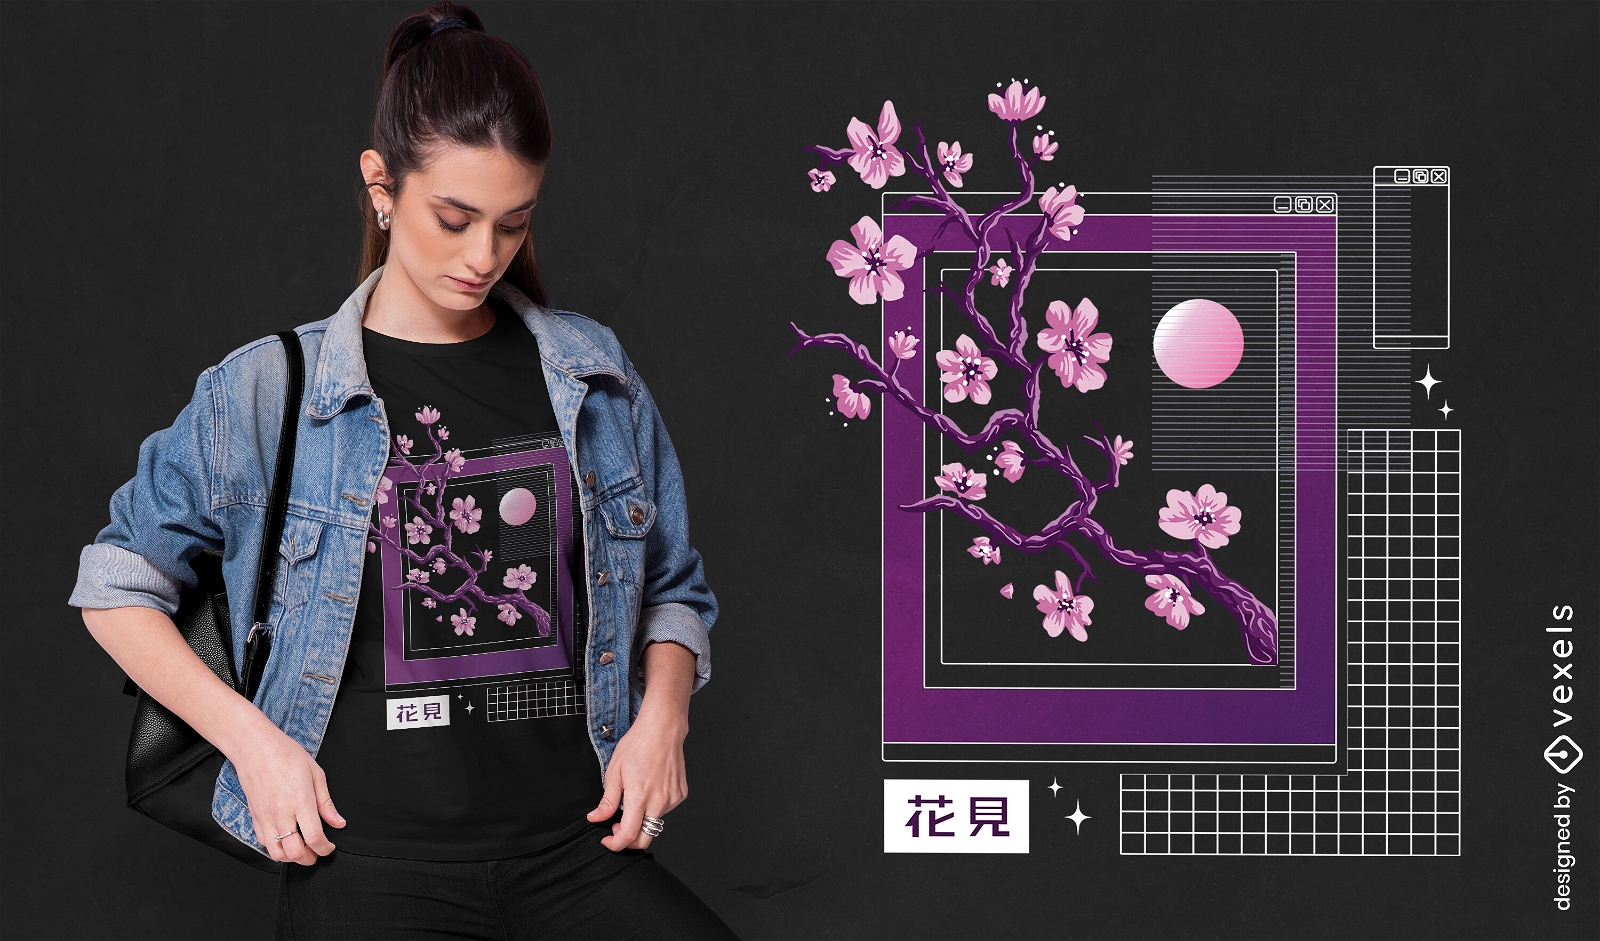 Dise?o de camiseta de vaporwave de flores de sakura.